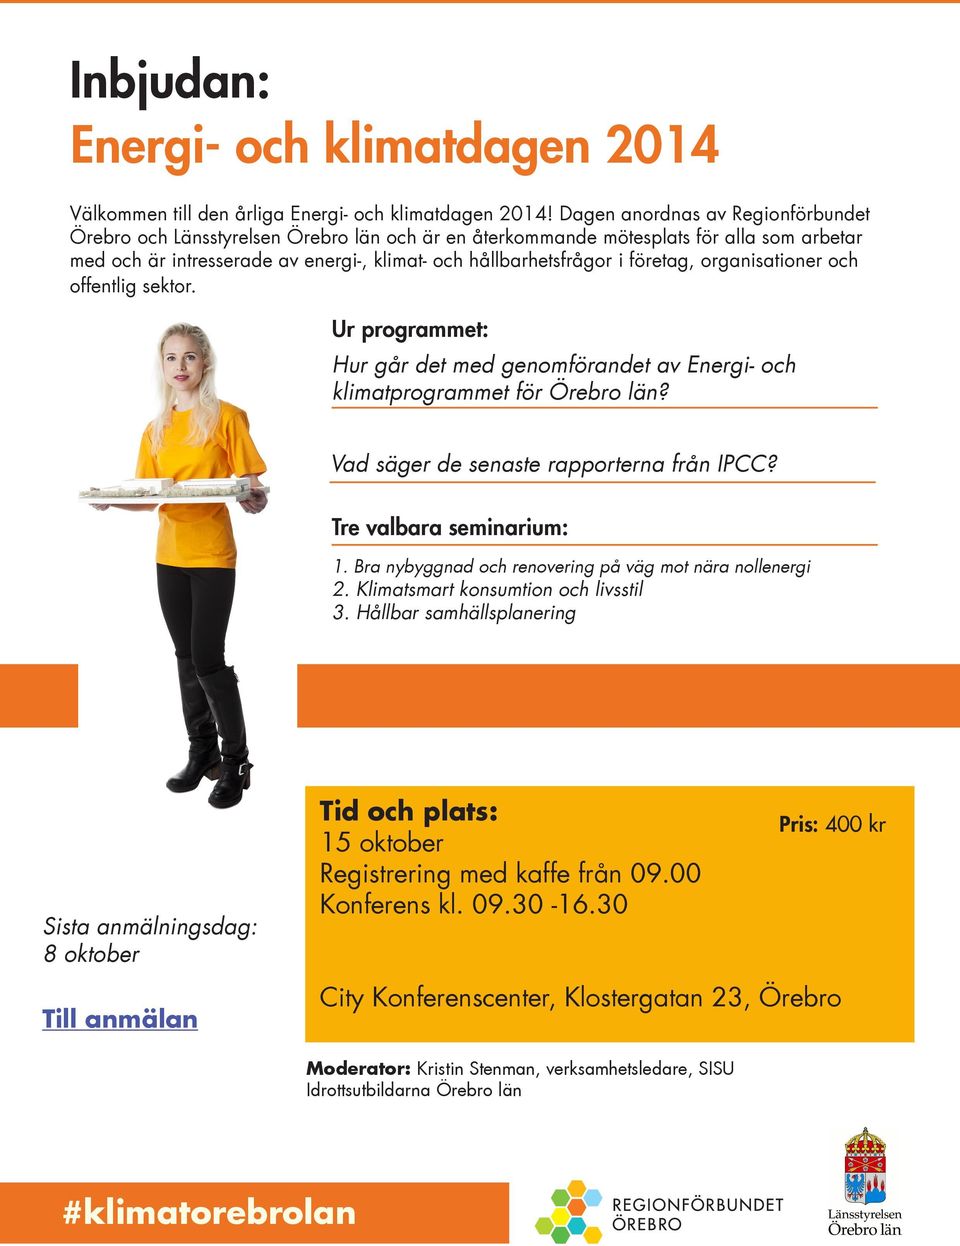 företag, organisationer och offentlig sektor. Ur programmet: Hur går det med genomförandet av Energi- och klimatprogrammet för Örebro län? Vad säger de senaste rapporterna från IPCC?